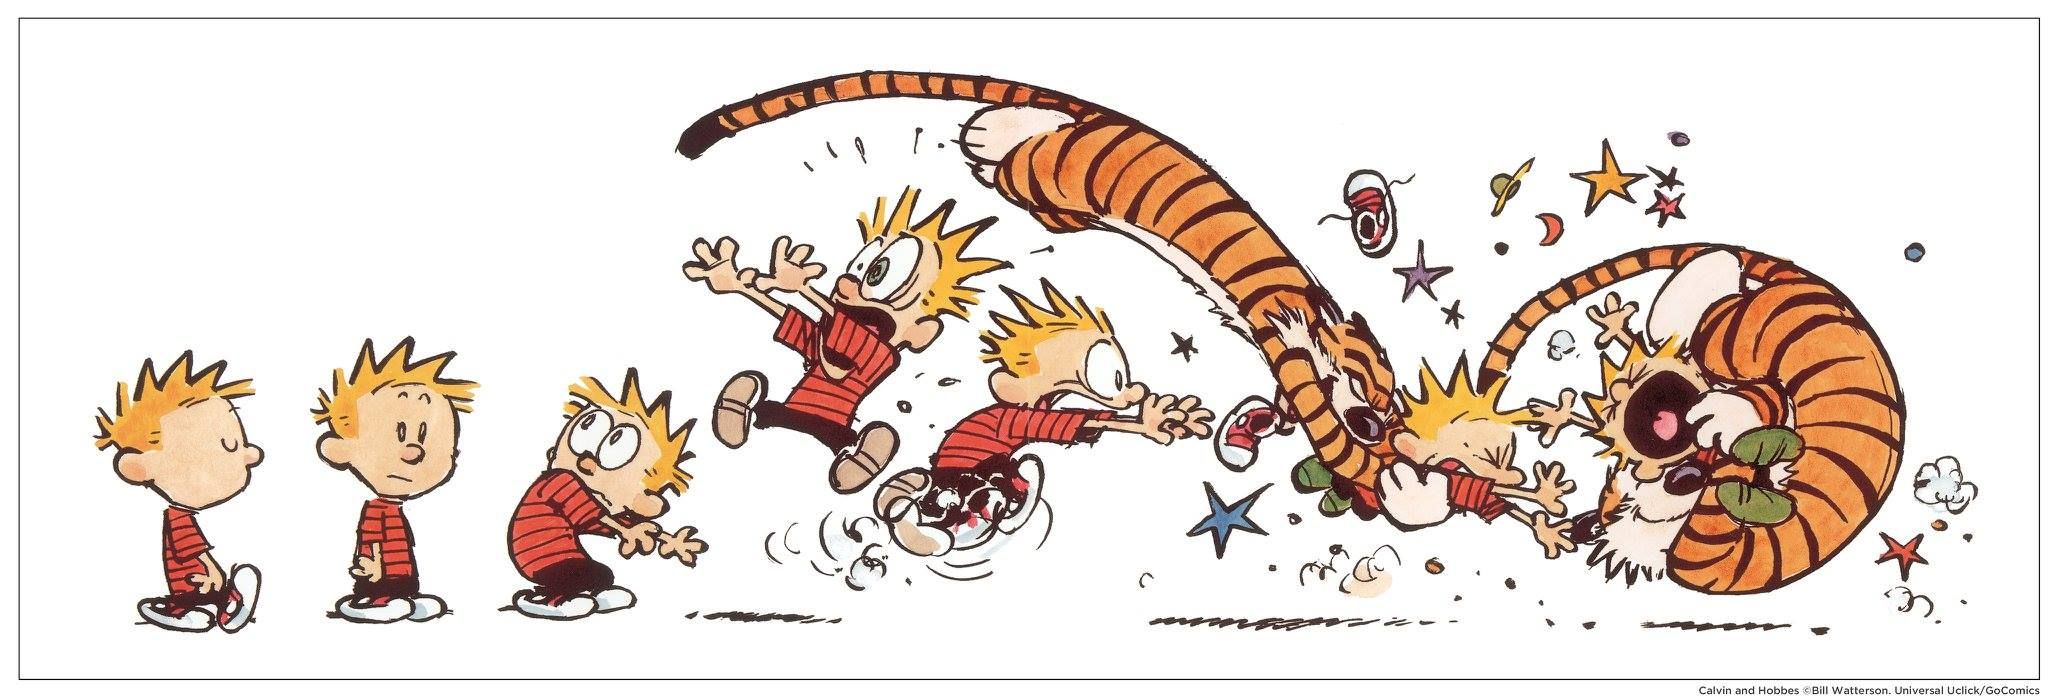 Calvin and Hobbes strip of Hobbes tackling a panicking calvin.